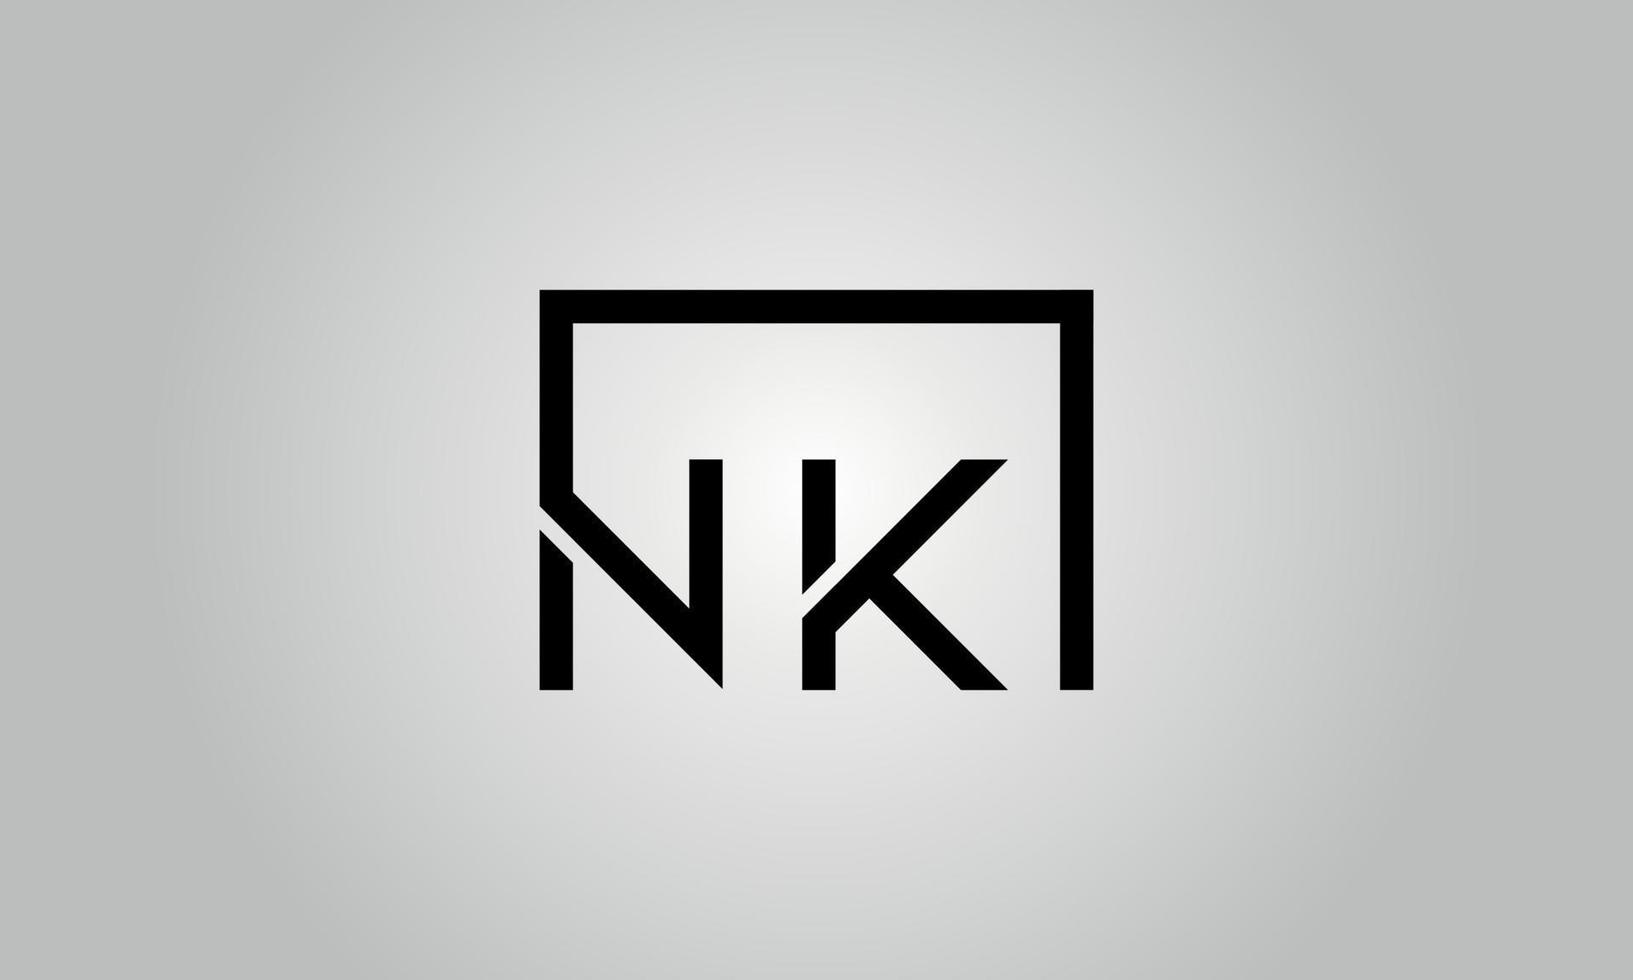 design de logotipo de letra nk. nk logotipo com forma quadrada em cores pretas modelo de vetor livre.